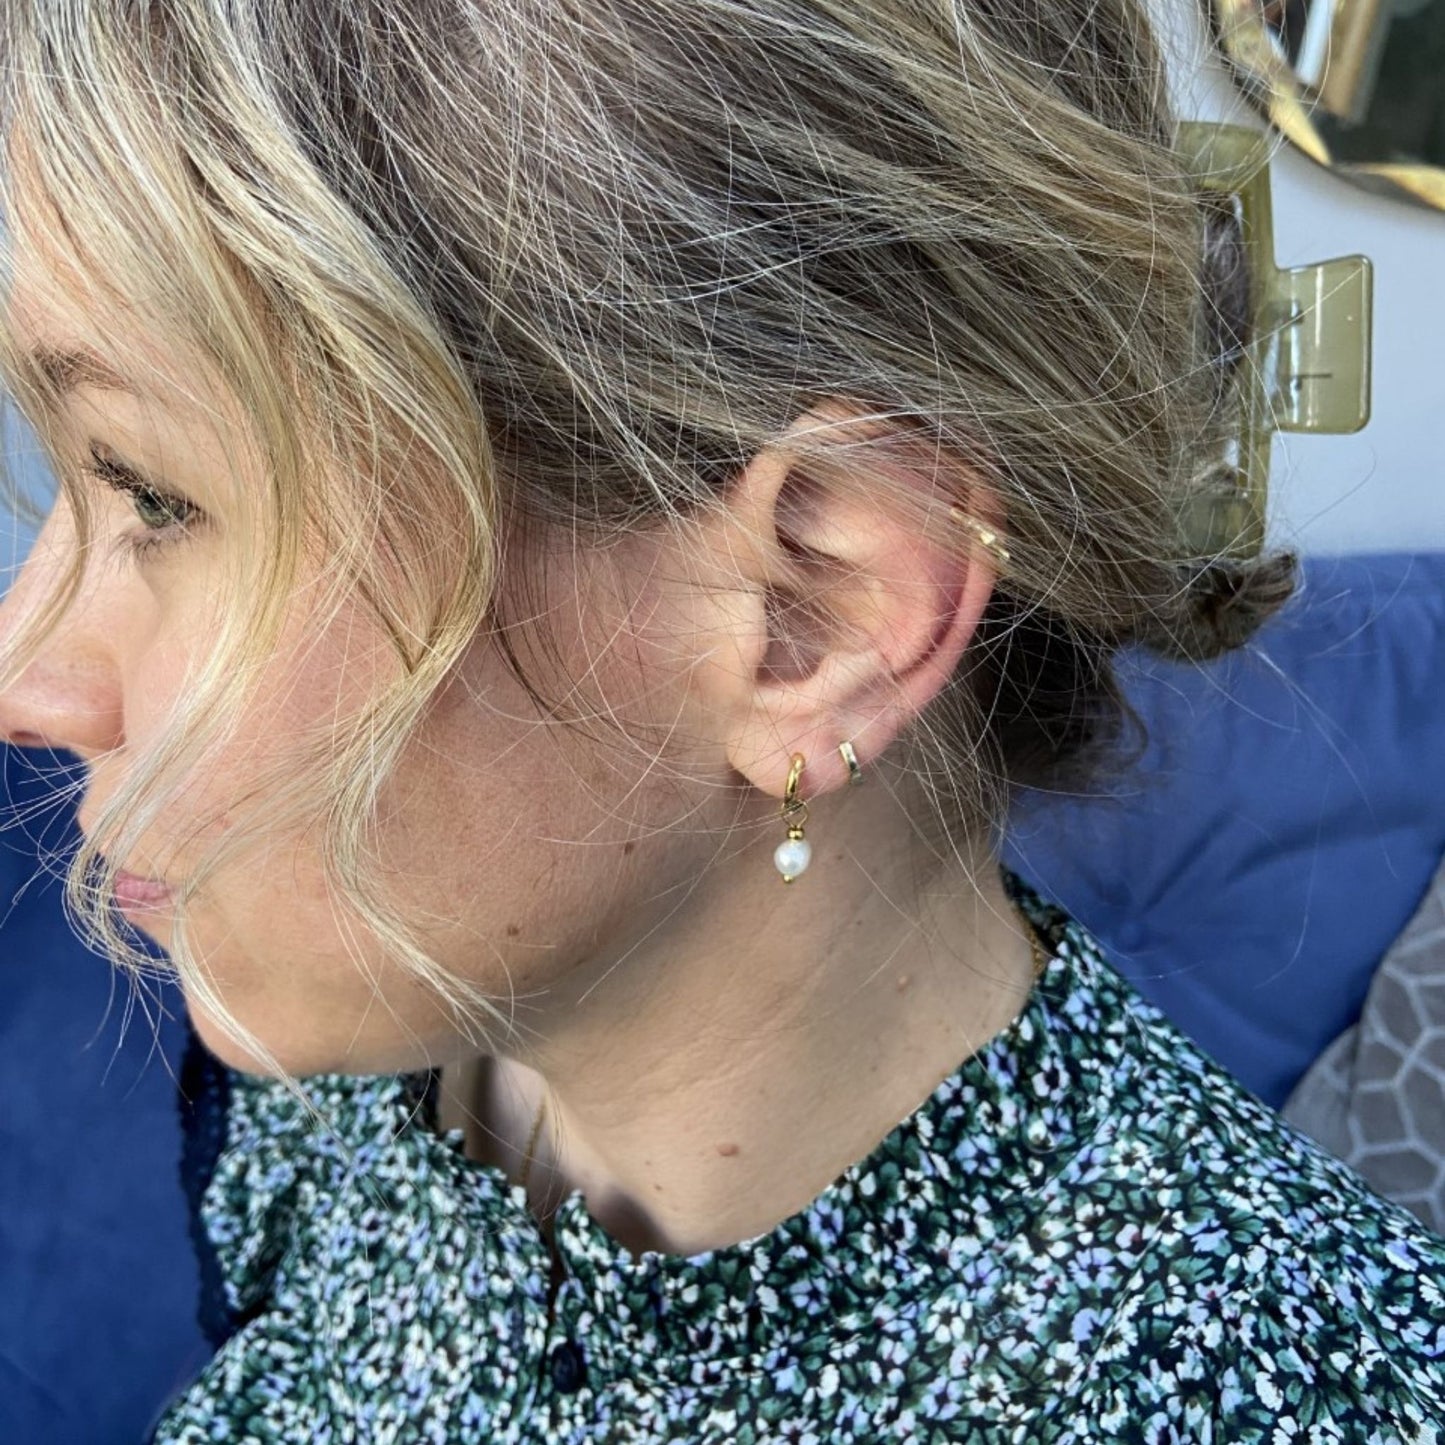 Silver Freshwater Pearl Drop Earrings